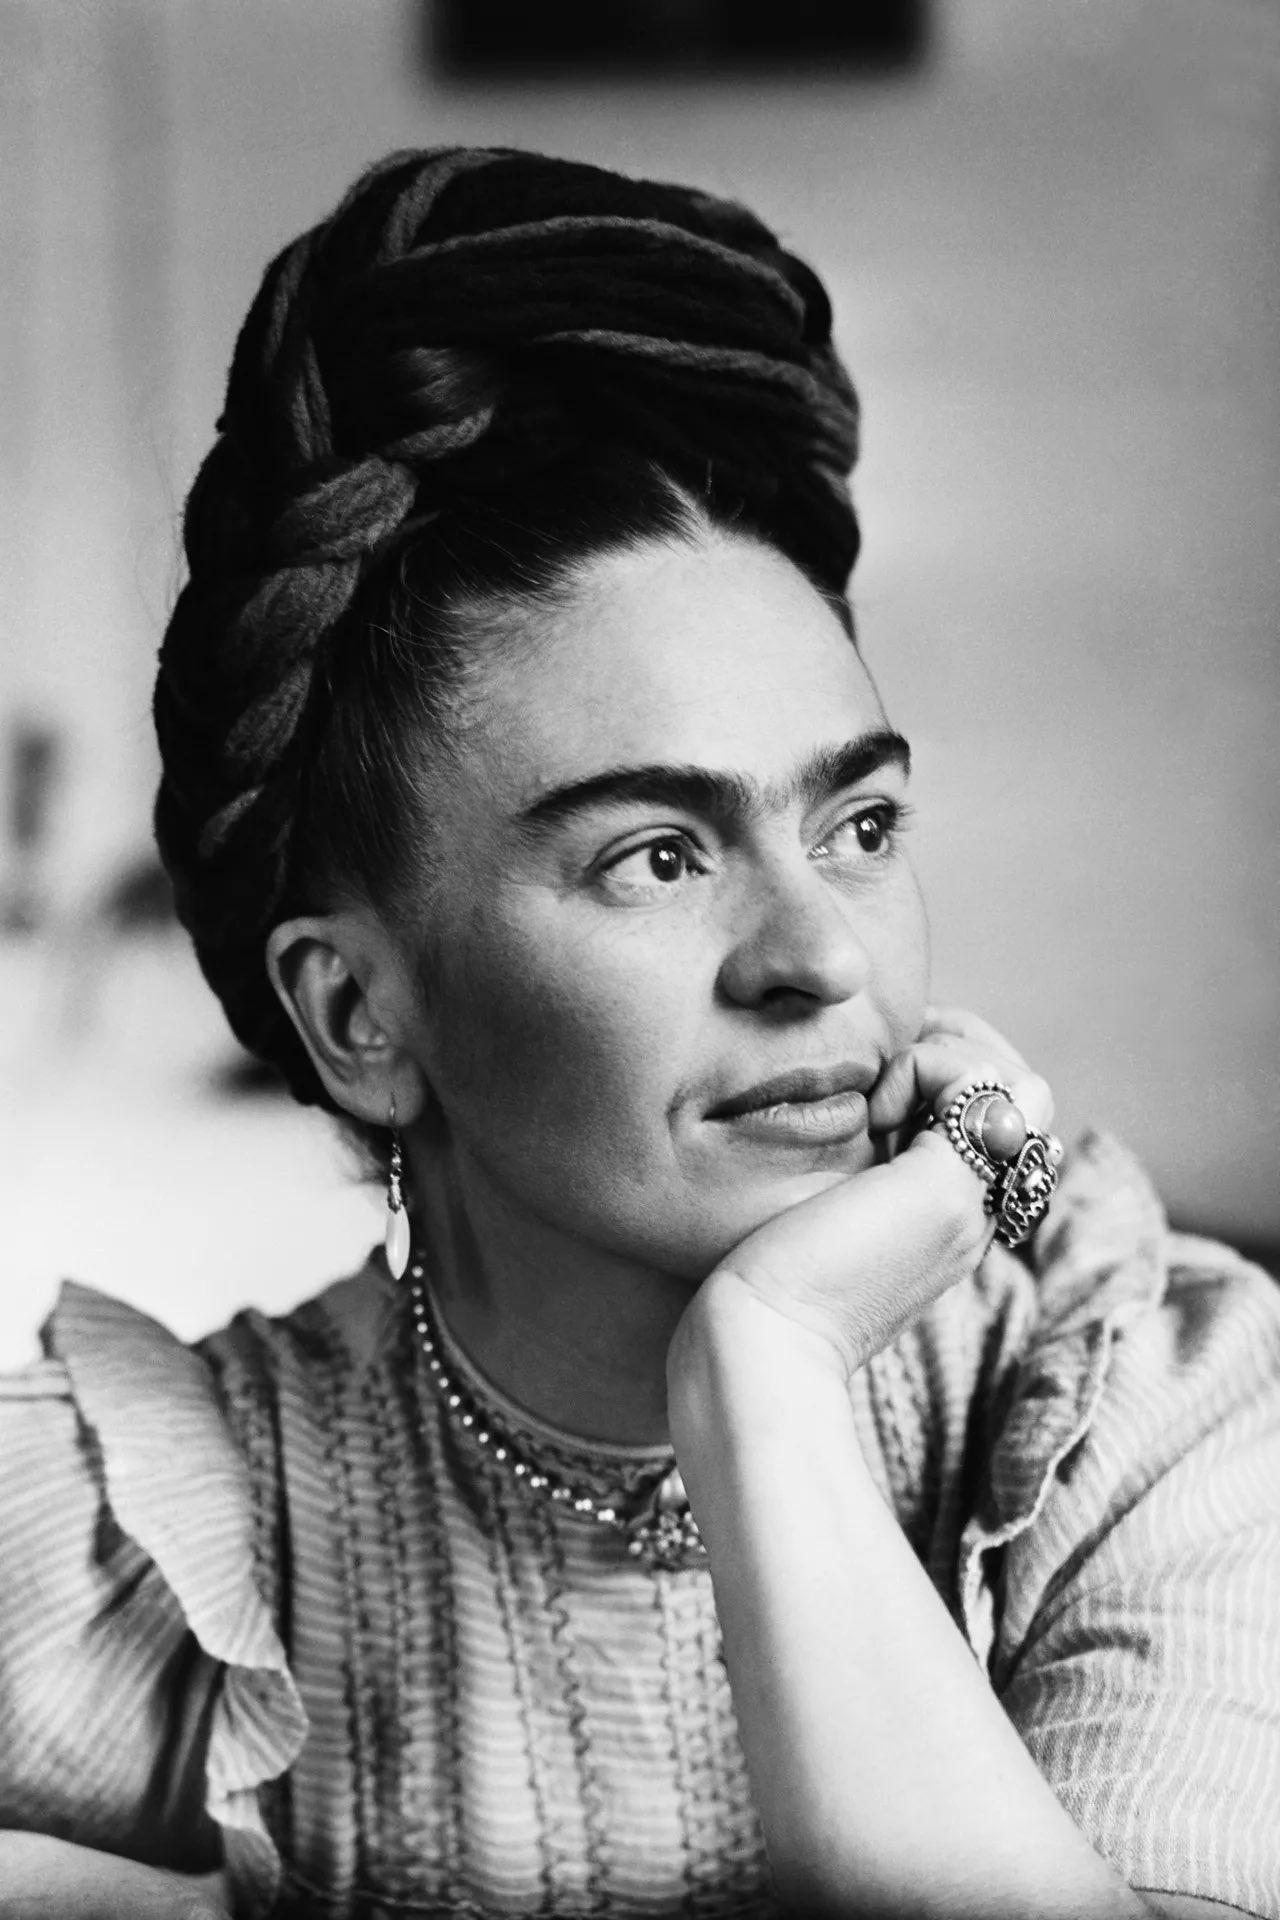 Pintora mexicana Frida Kahlo posa para fotografia em preto e branco